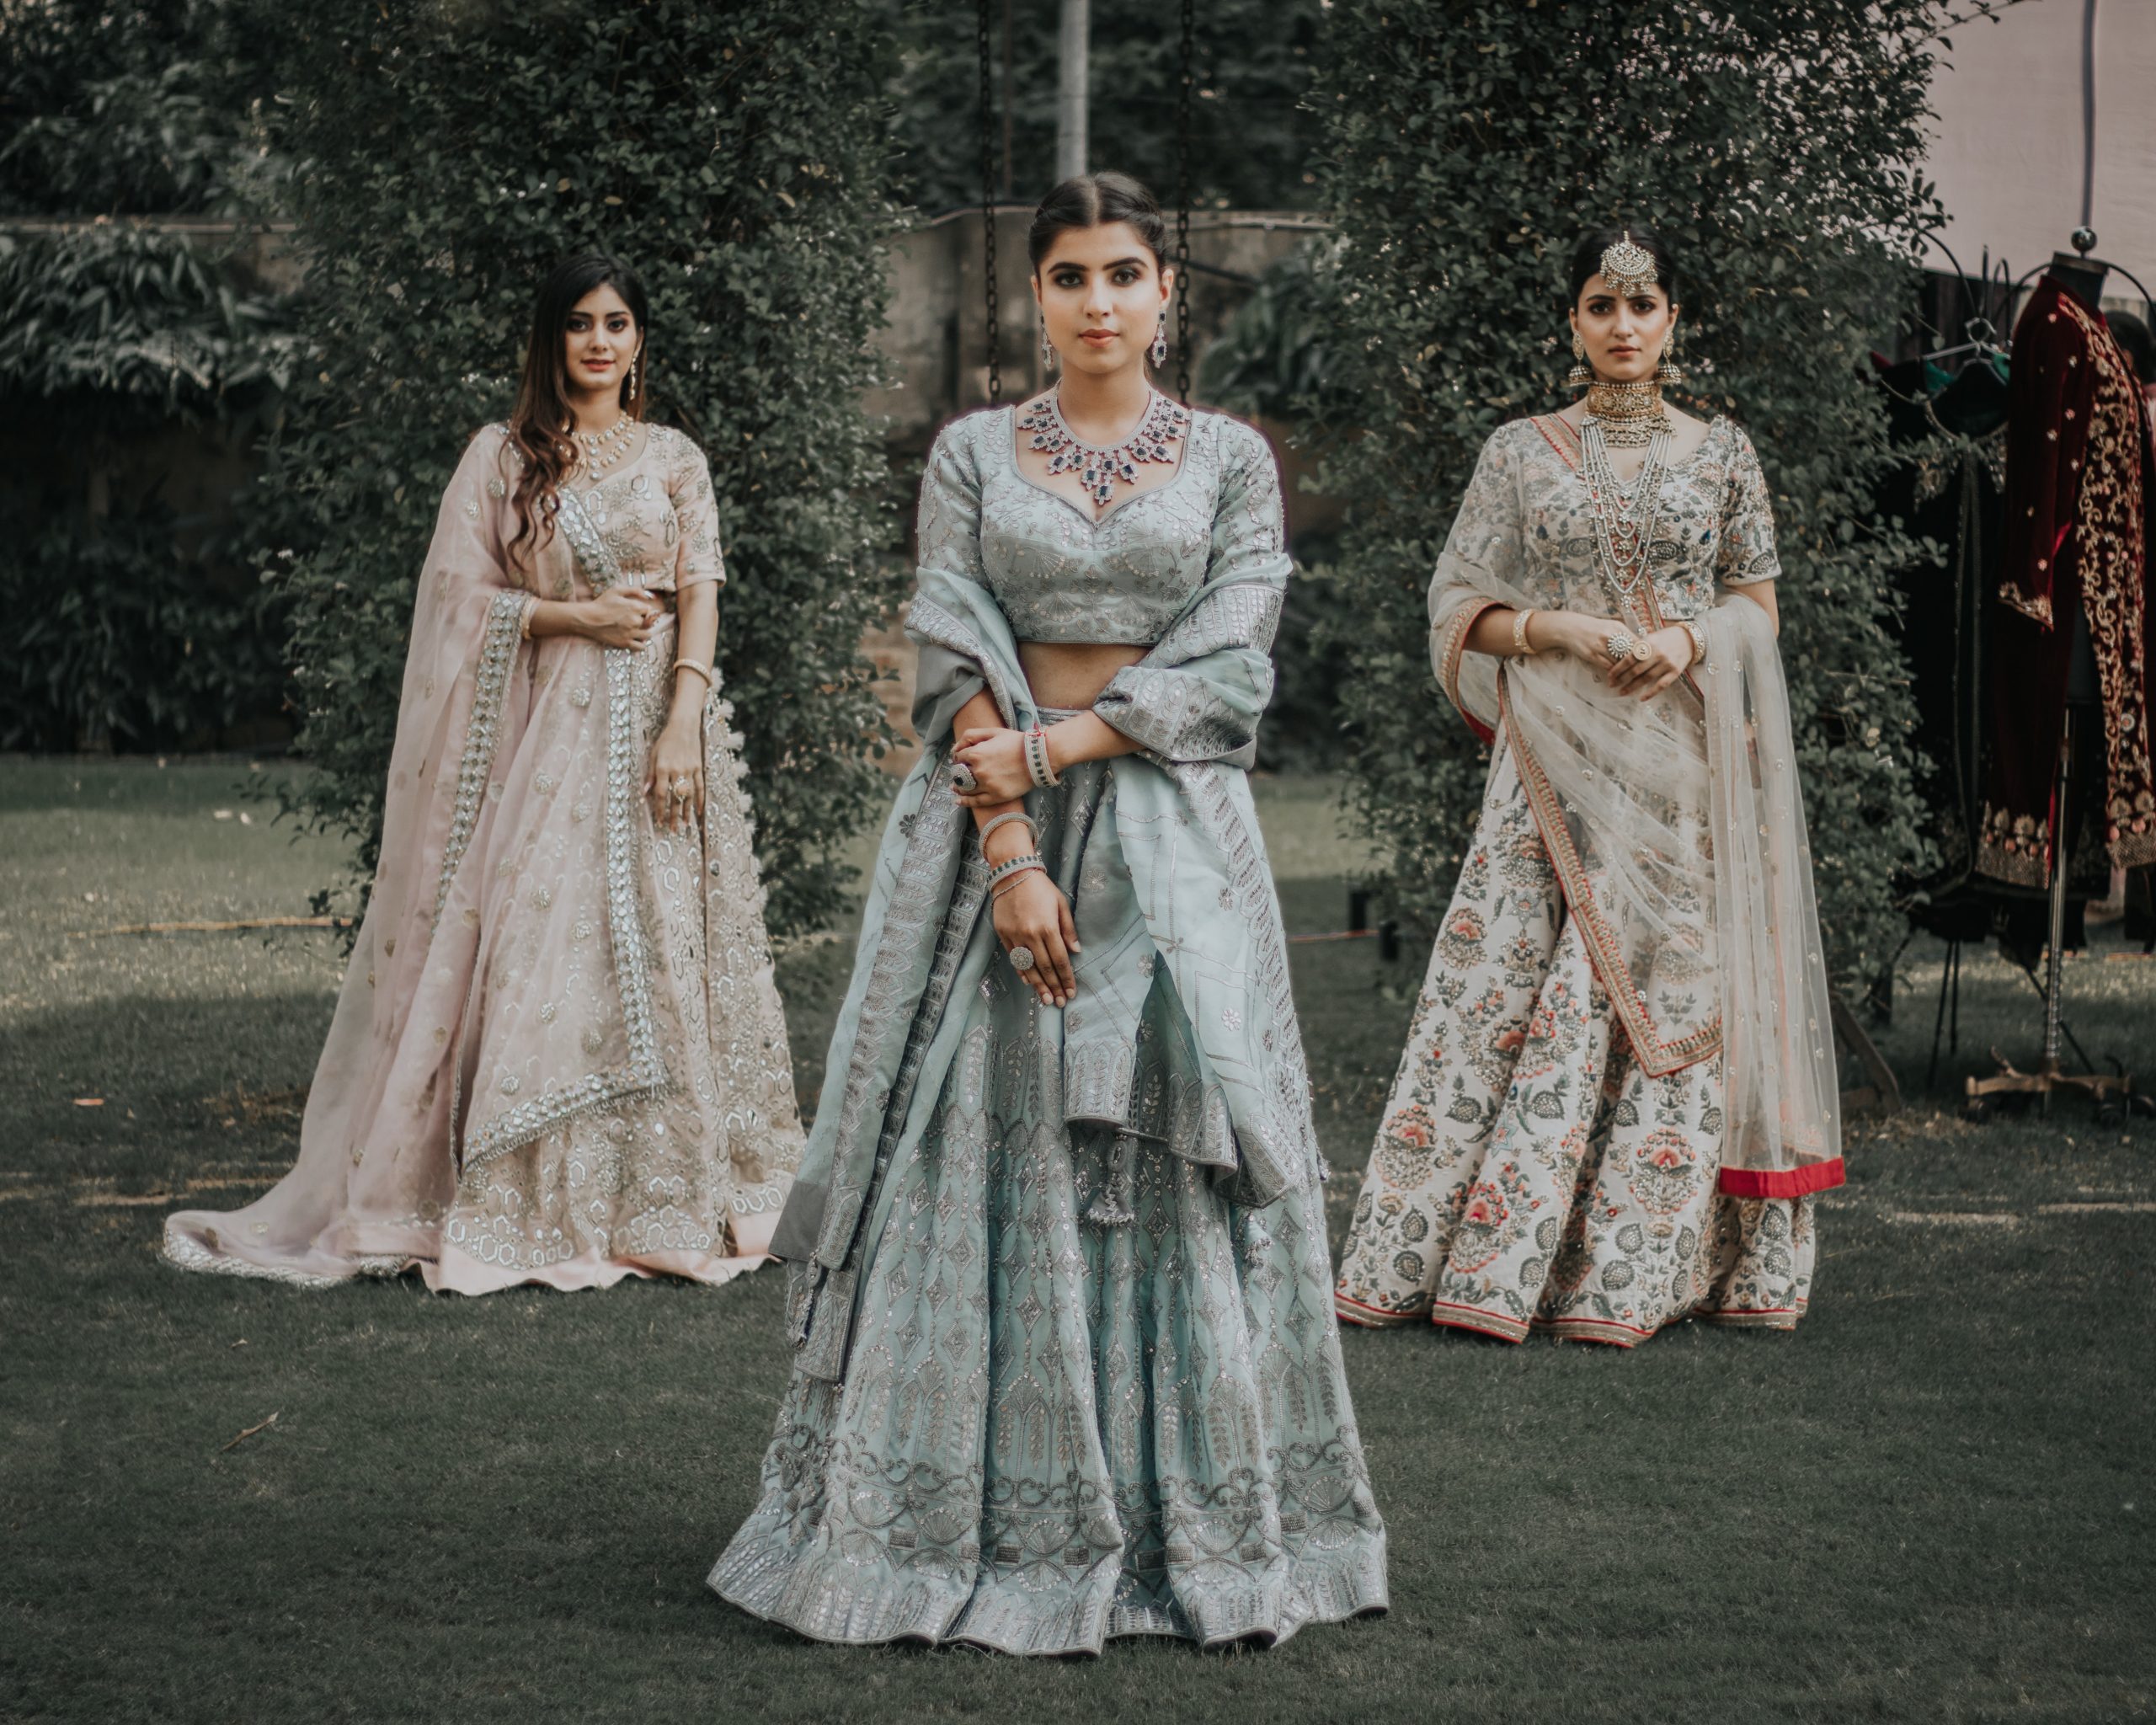 Indian Wedding Dress for Guest: 30+ Modern Wedding Outfit Ideas for guests  | Indian wedding dress modern, Indian wedding dress, Indian wedding fashion